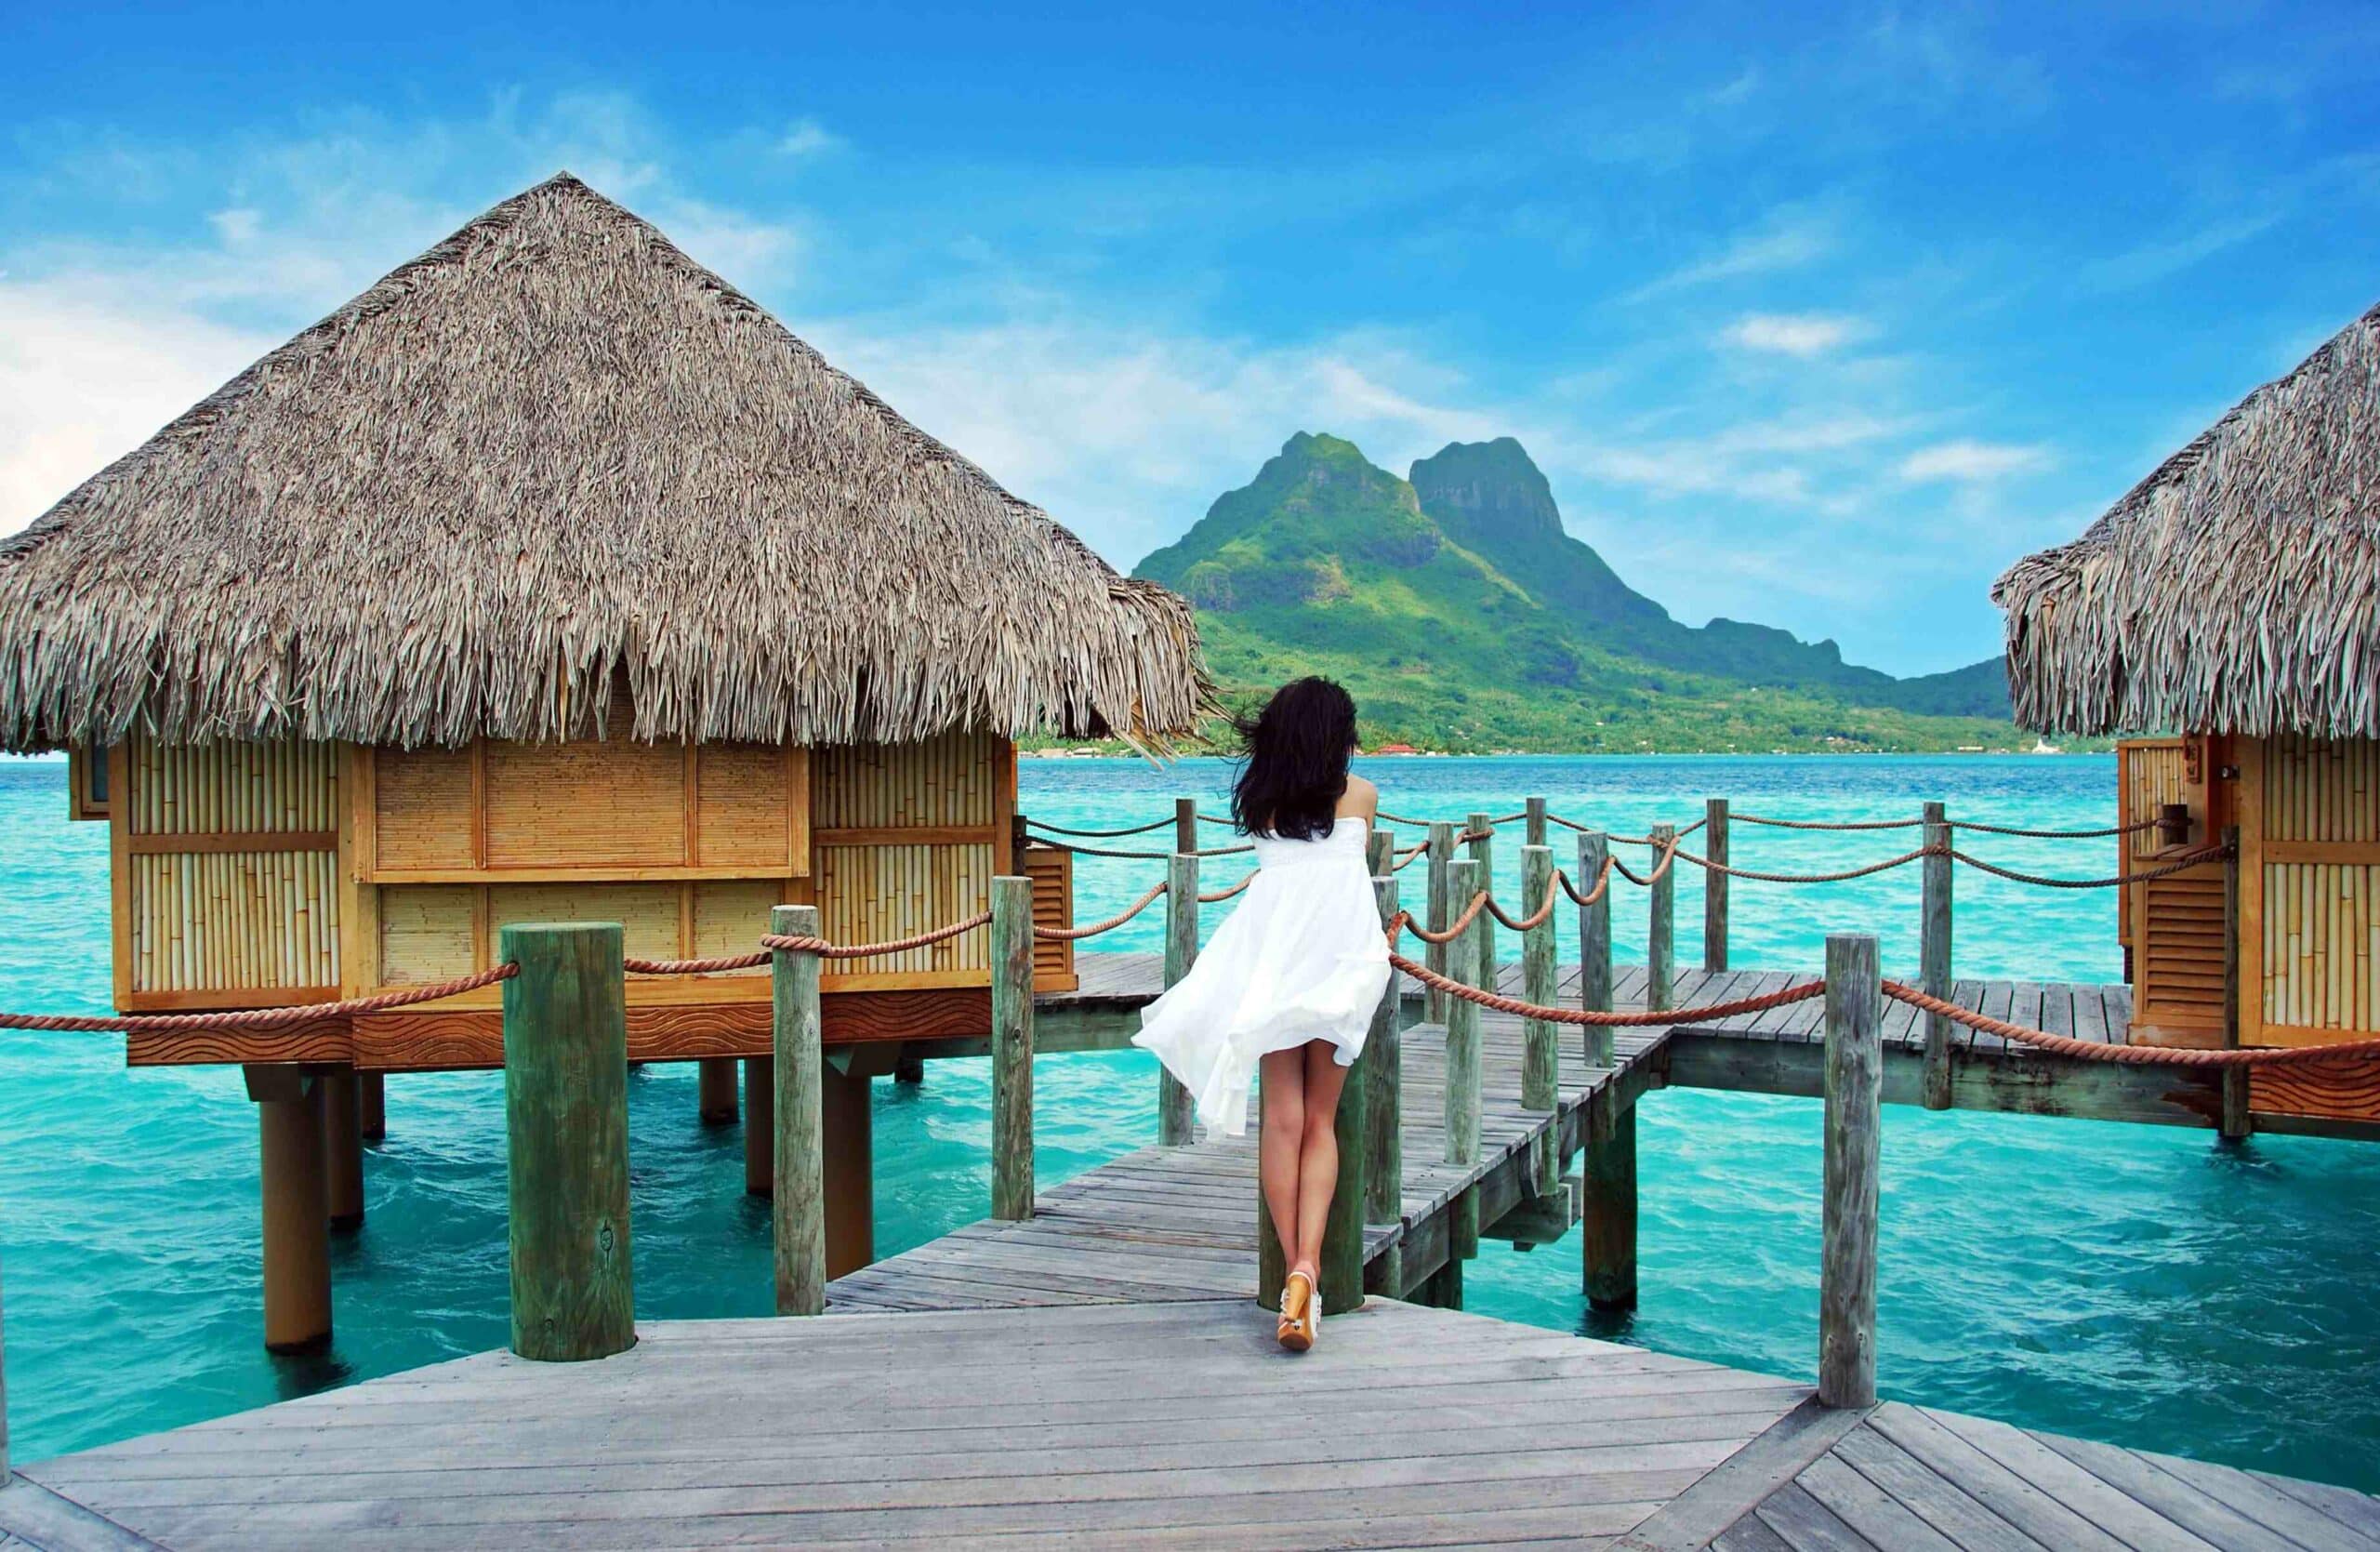 Quali sono i motivi convincenti per viaggiare nella Polinesia francese?